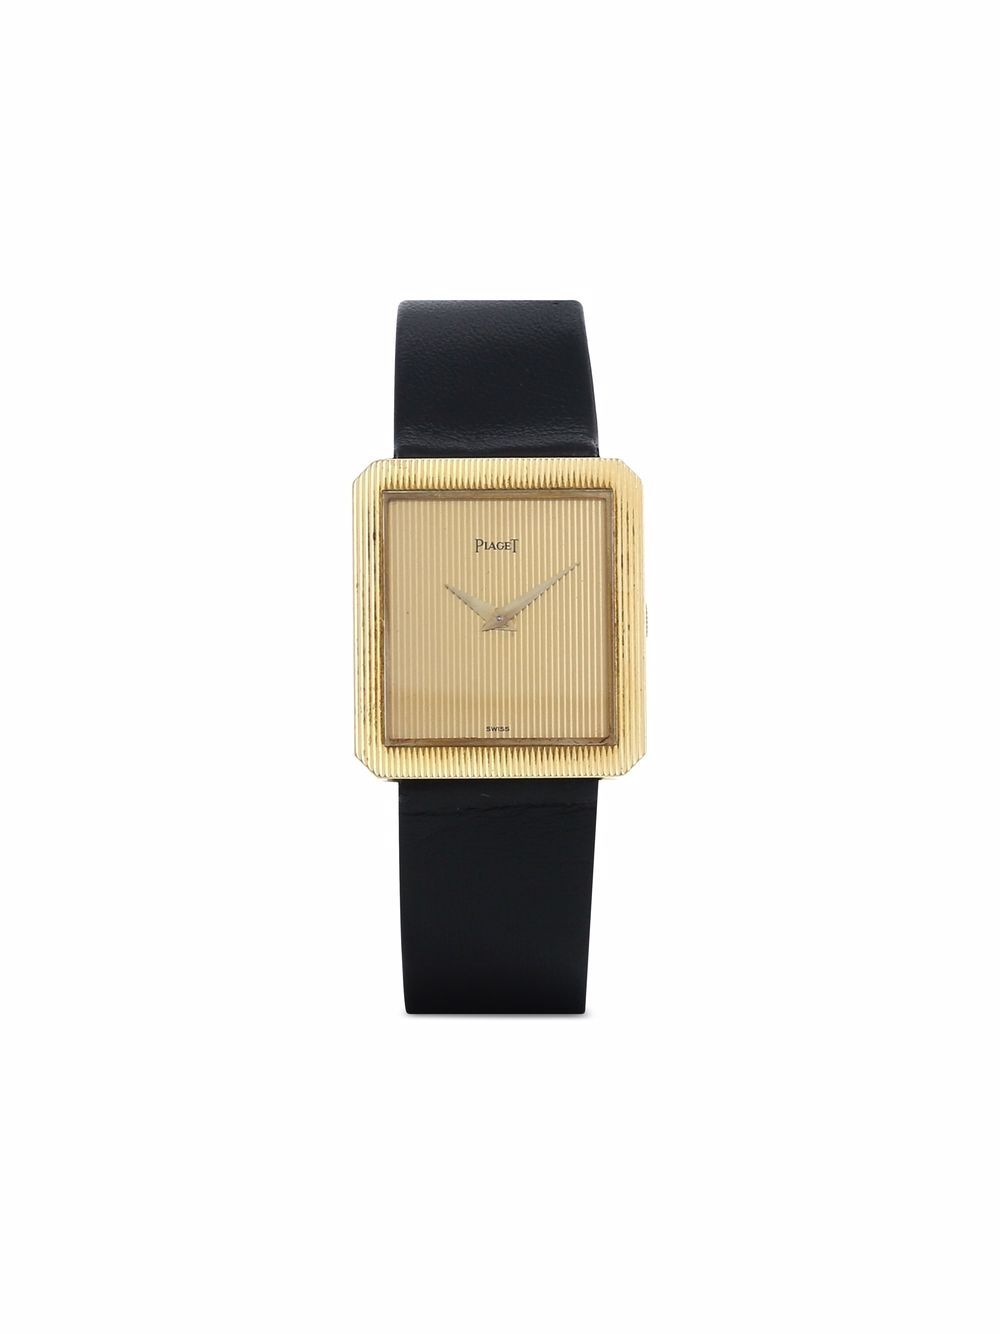 фото Piaget наручные часы protocole pre-owned 25 мм 1970-х годов